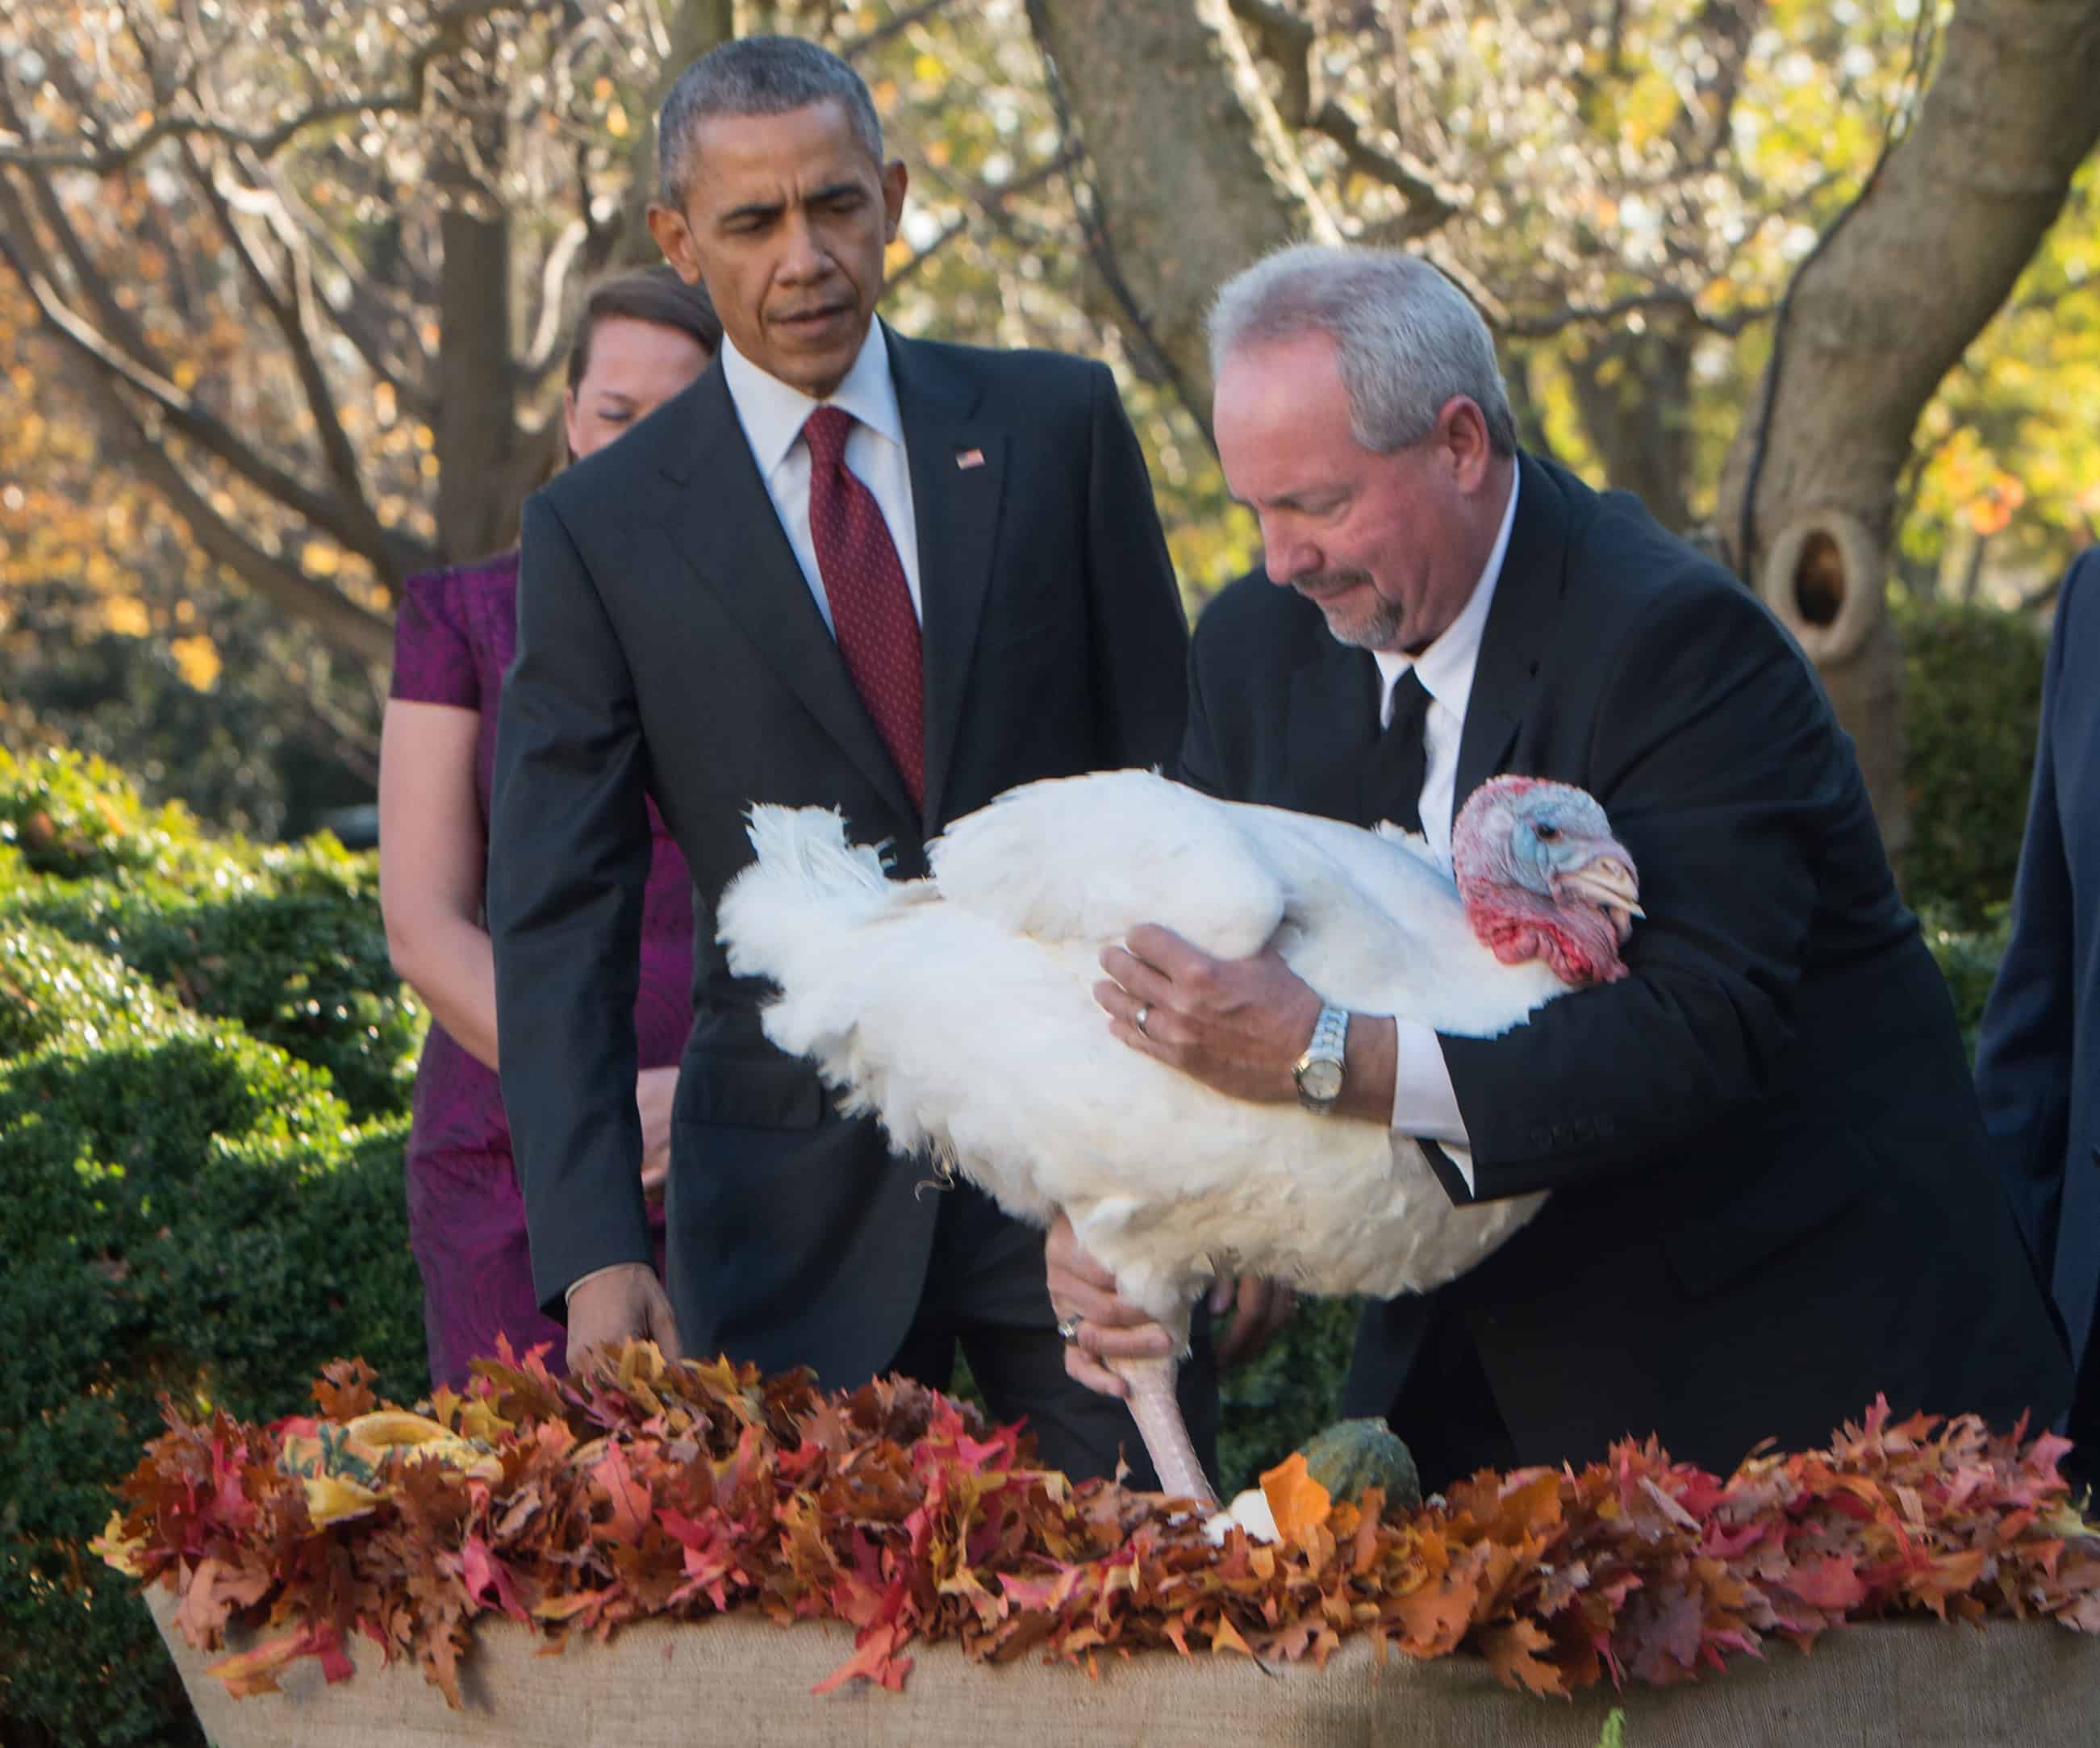 Obama Thanksgiving turkey pardon; terrorist threats